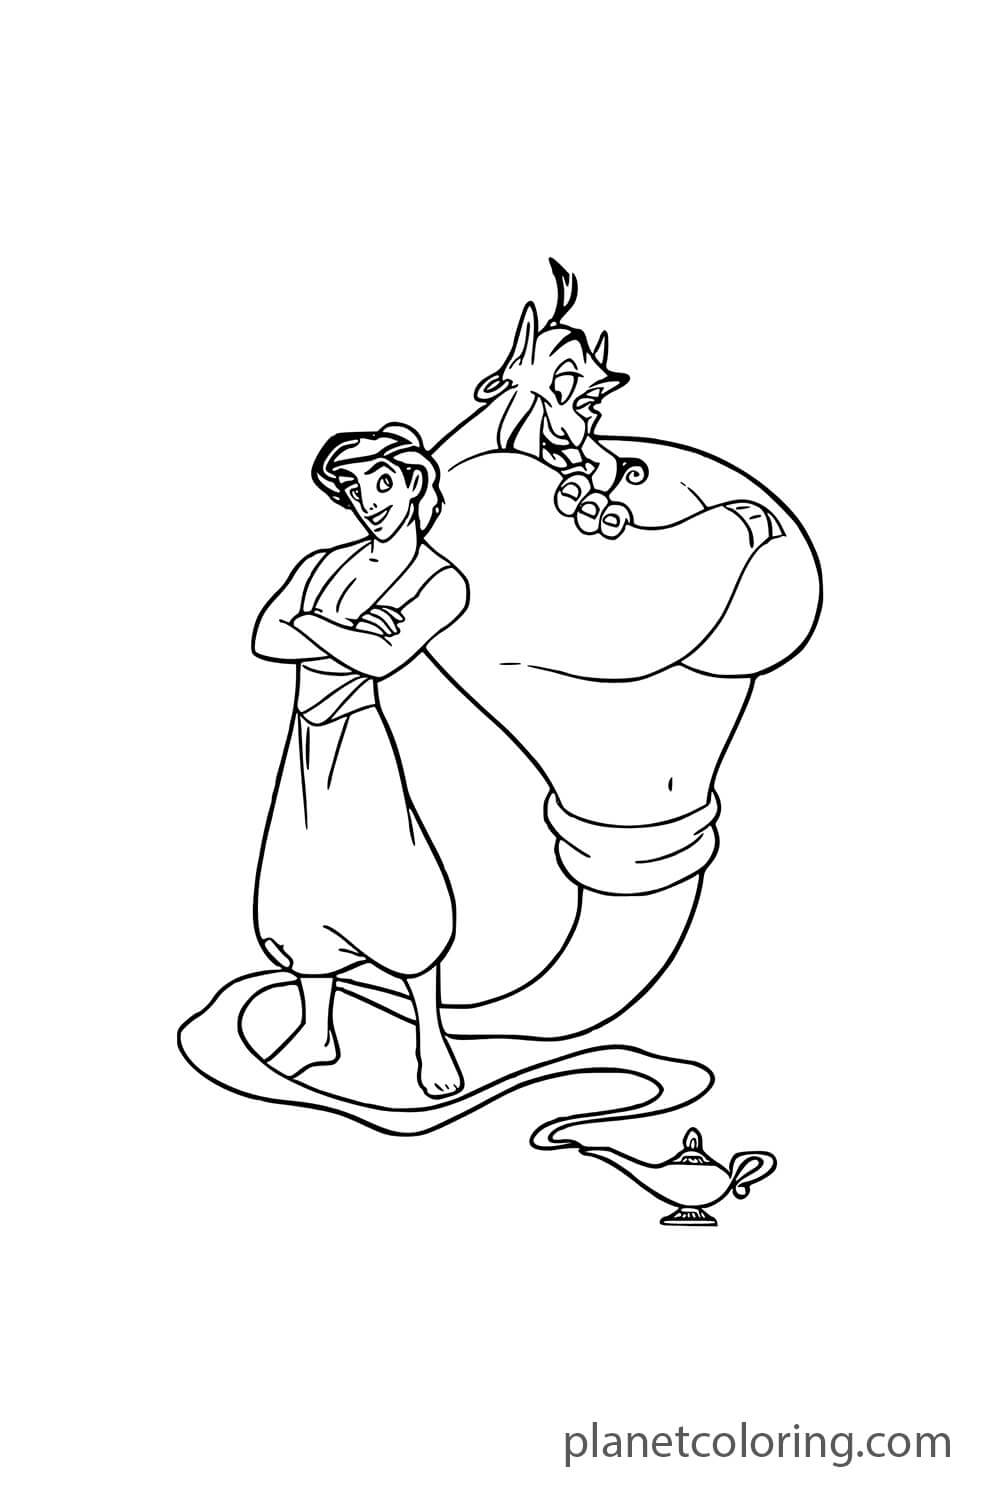 Aladdin with genie